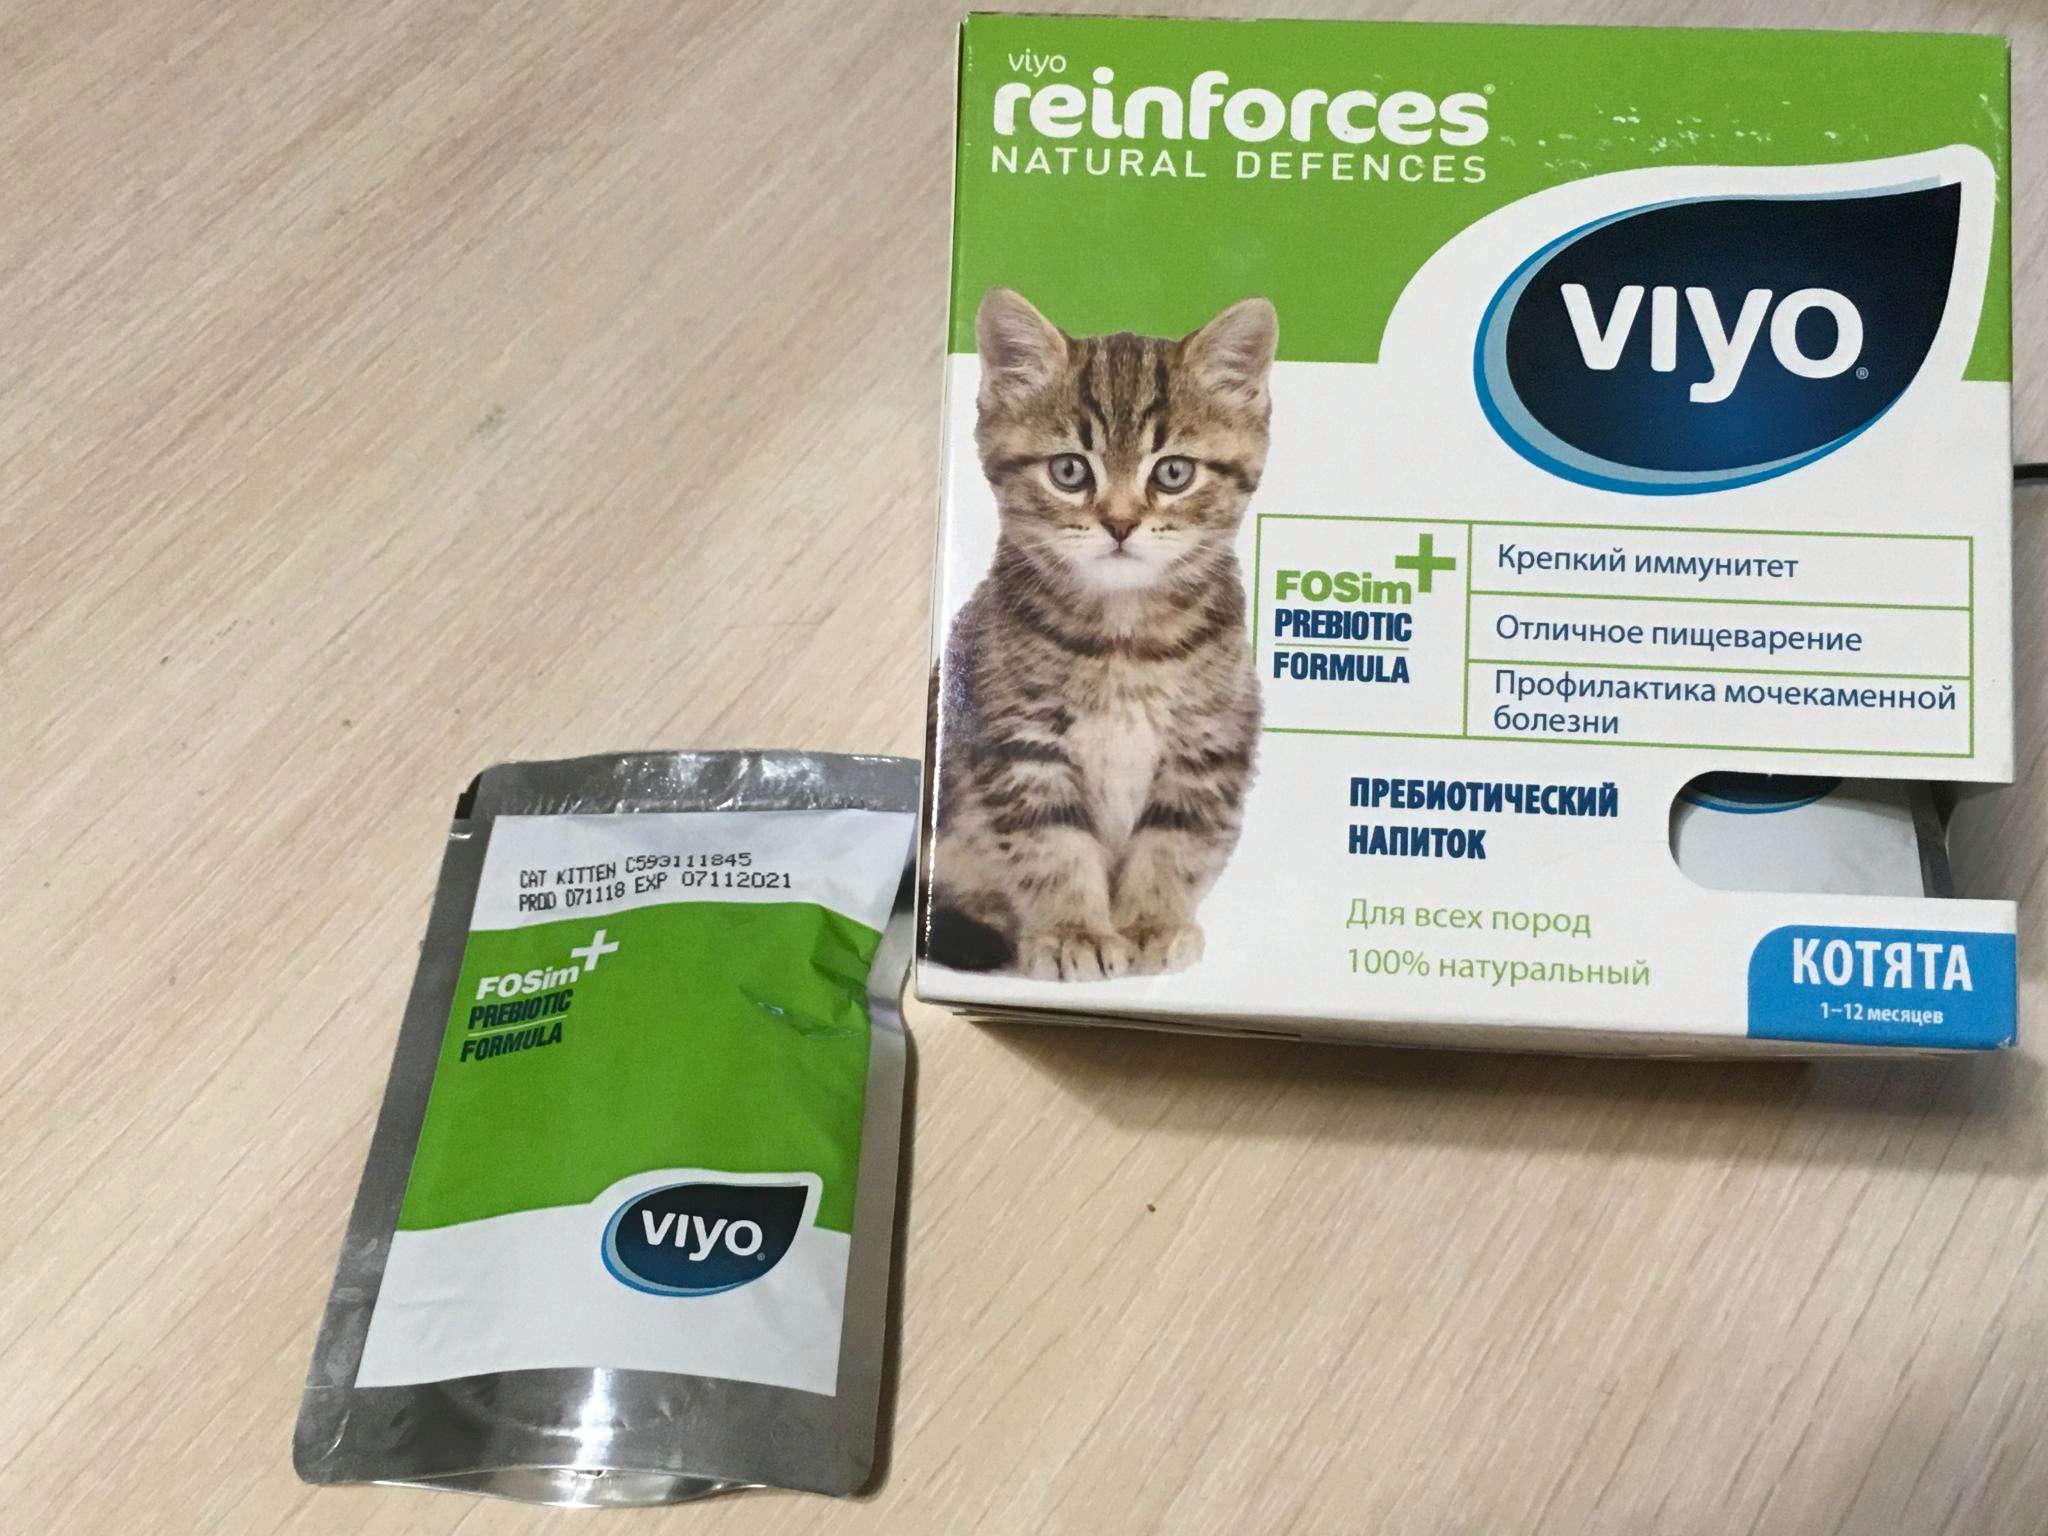 Пробиотики для кошек: нужны ли и как их даватьцентр реабилитации временно бездомных животных «юна»